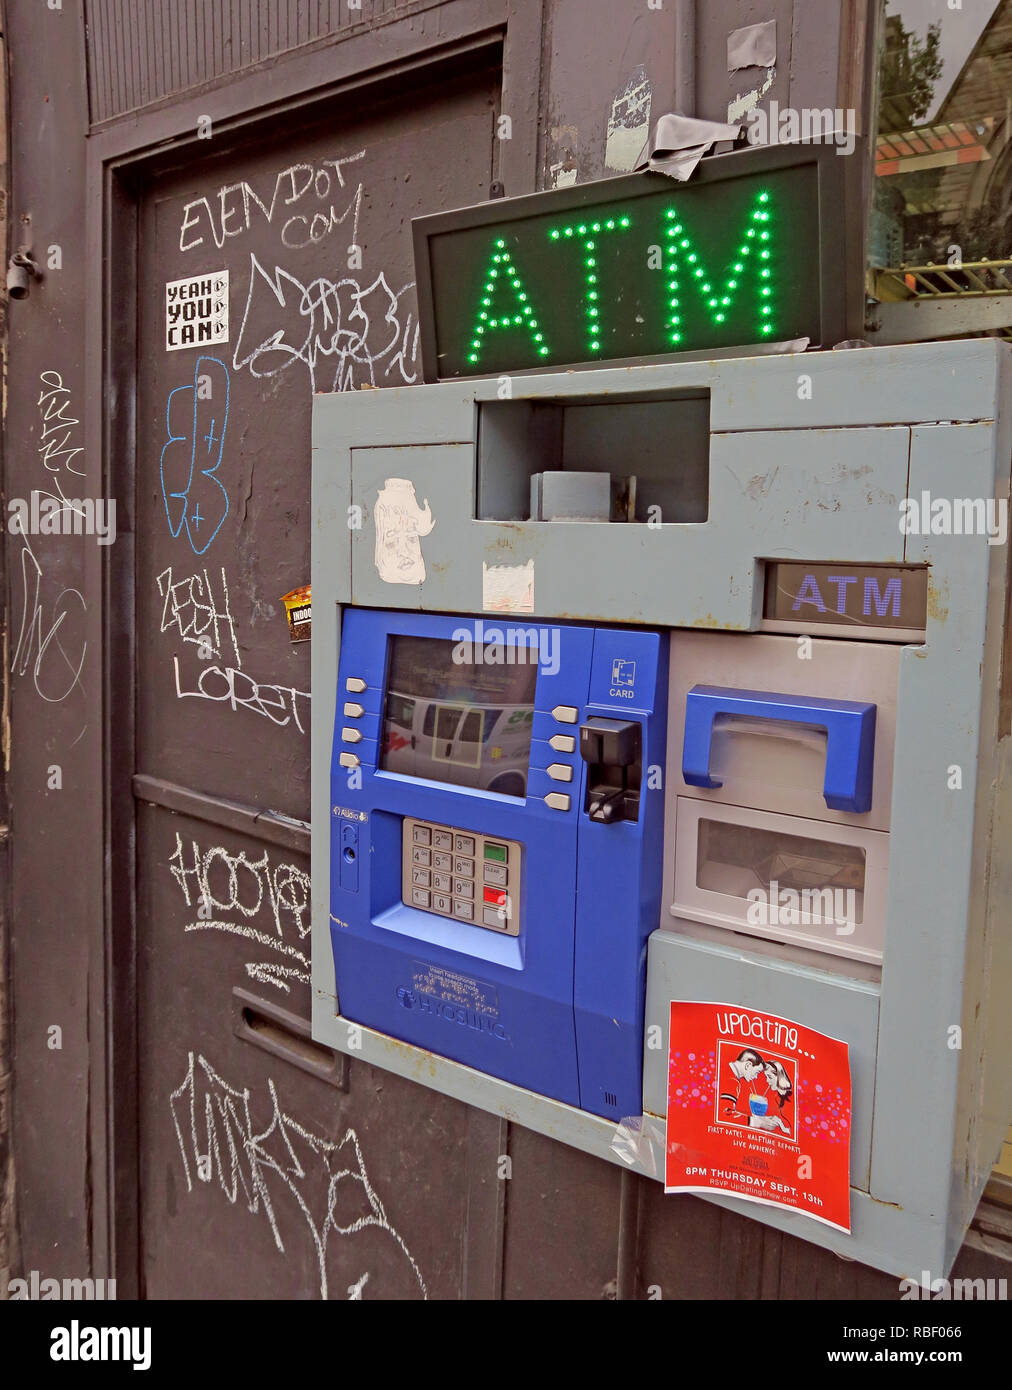 Distributeur automatique de la rue nous, Hyosung ATM, la Place, East Village, Manhattan, New York City, New York, NY, USA Banque D'Images